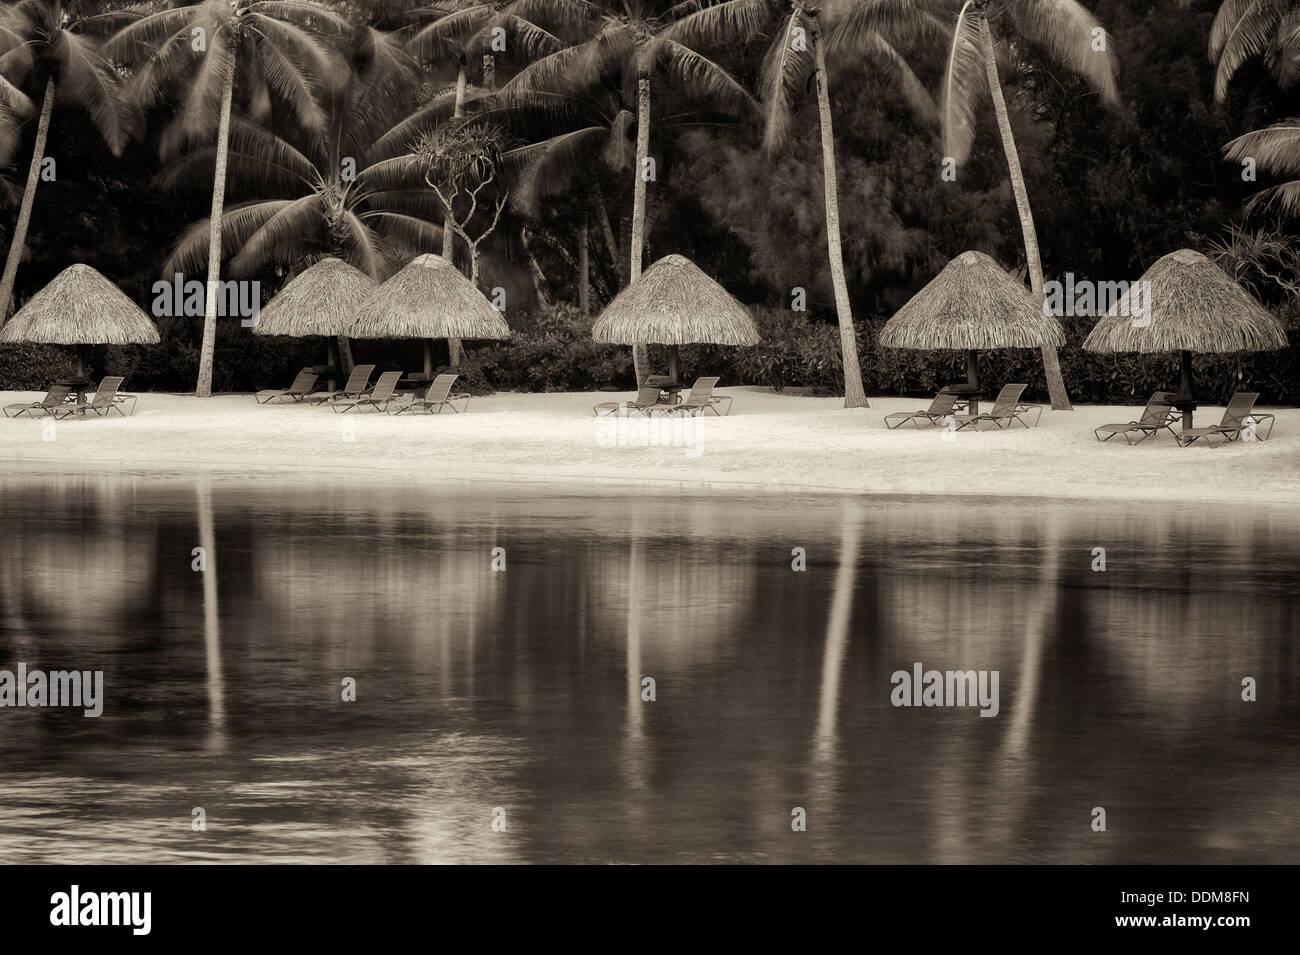 Beach on lagoon with umbrellas and chairs. Bora Bora. French Polynesia Stock Photo